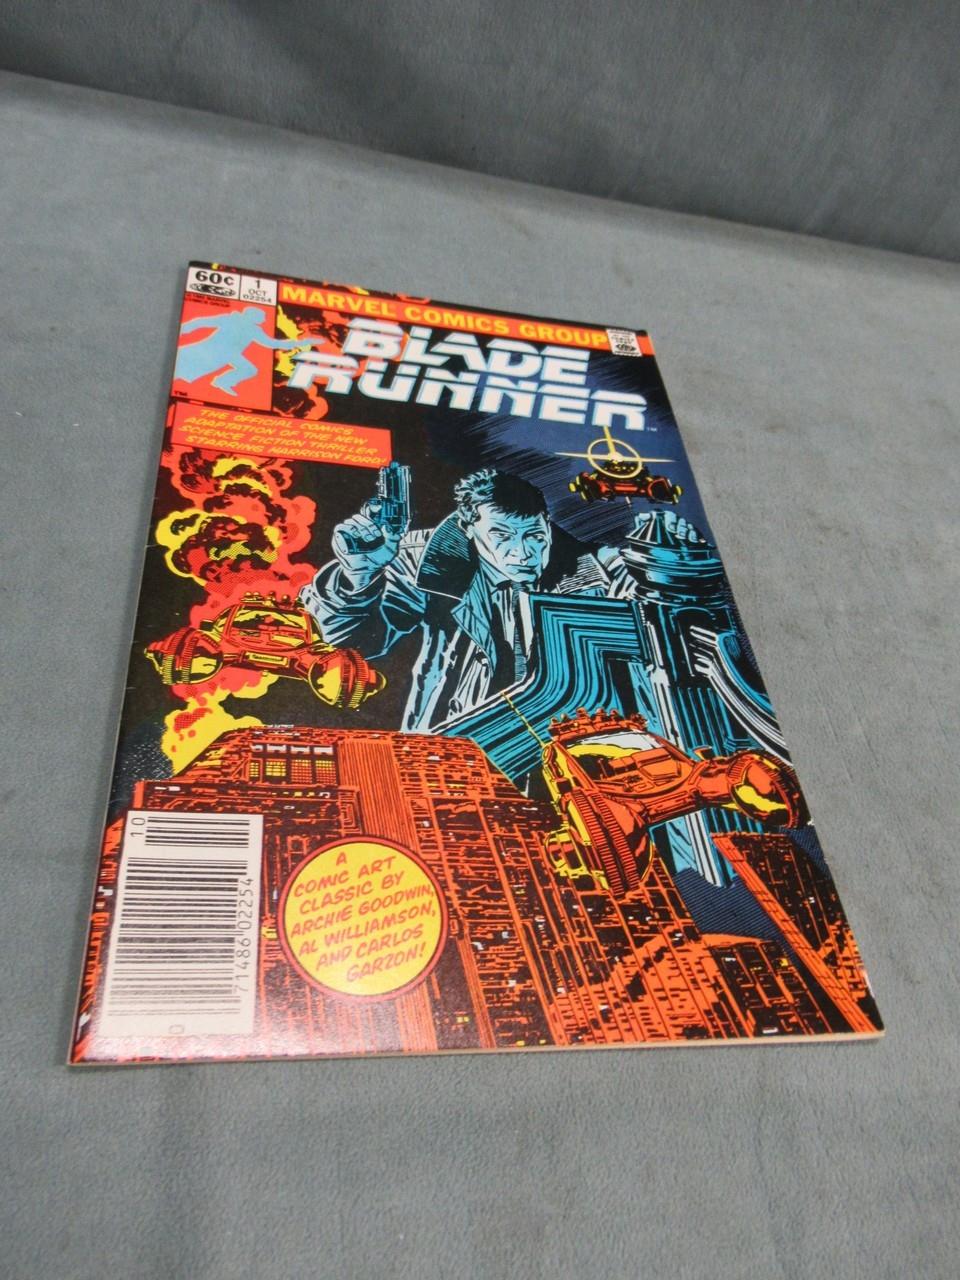 Blade Runner #1 (1982) Marvel